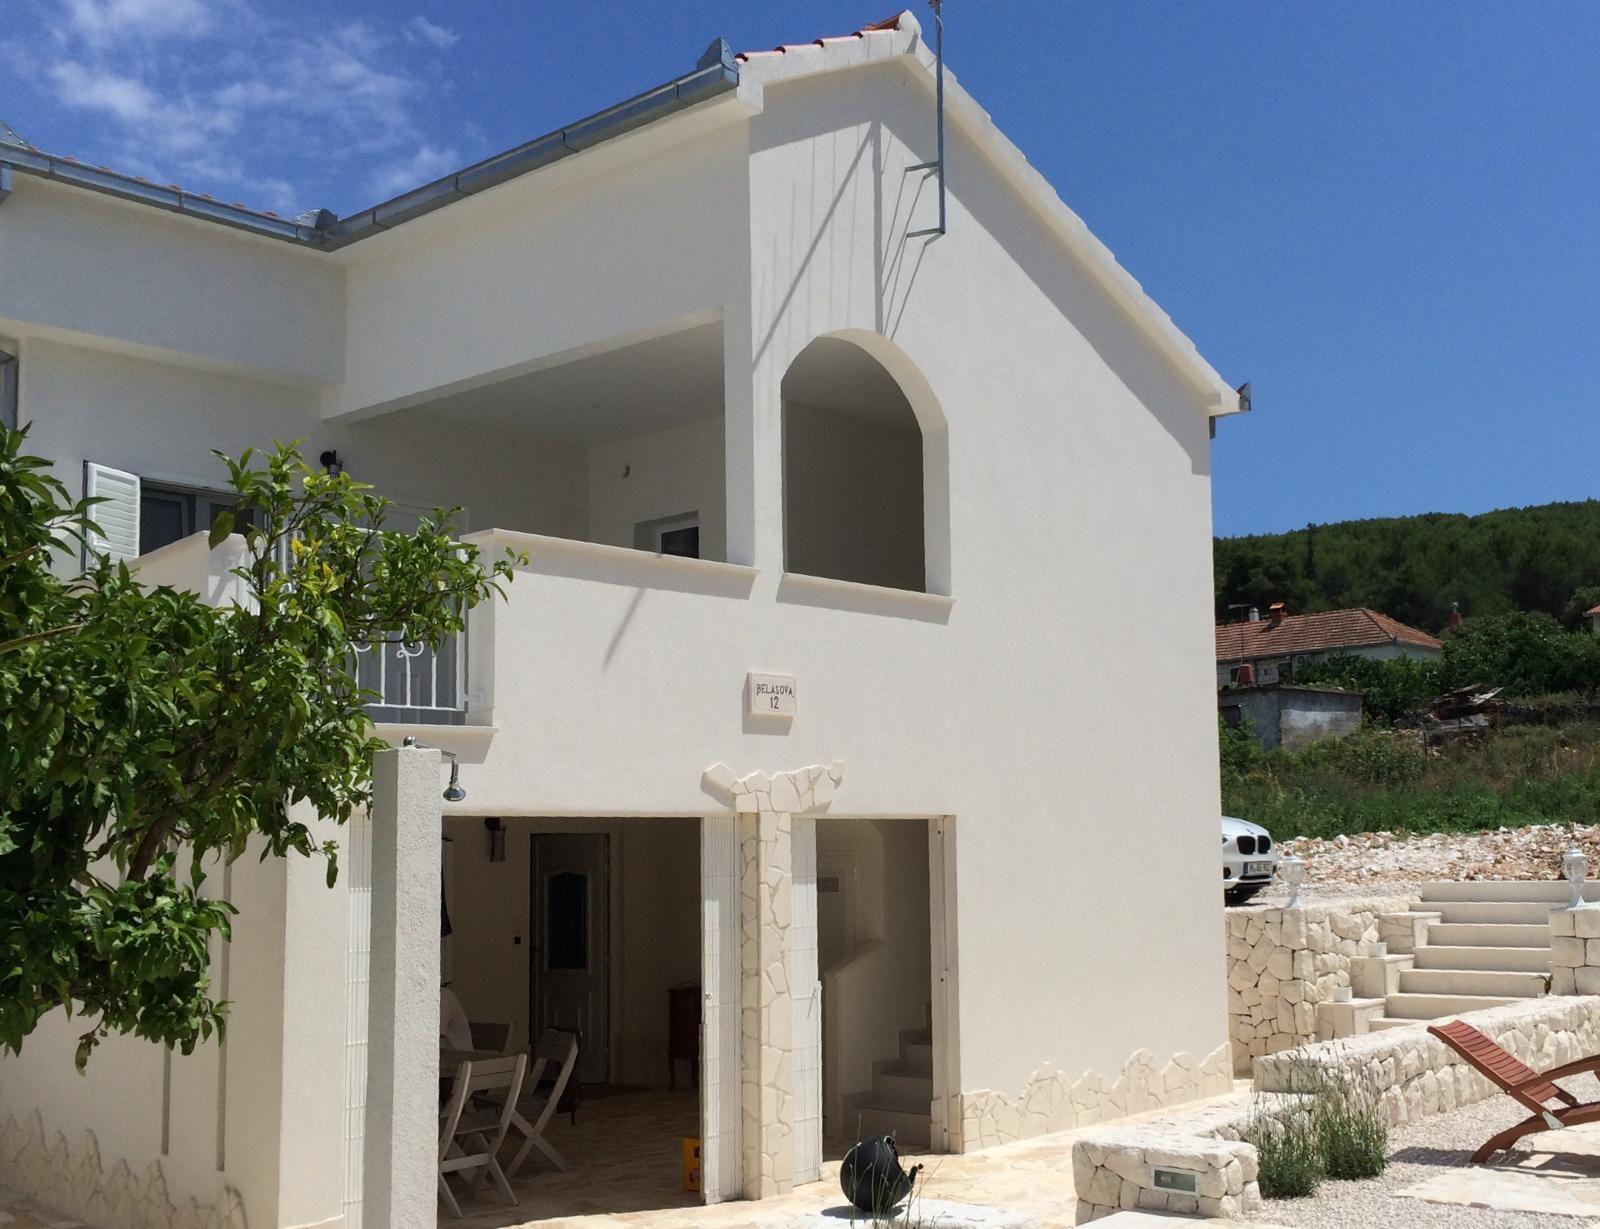 Ferienhaus für 4 Personen ca. 180 m² in  Ferienhaus in Kroatien